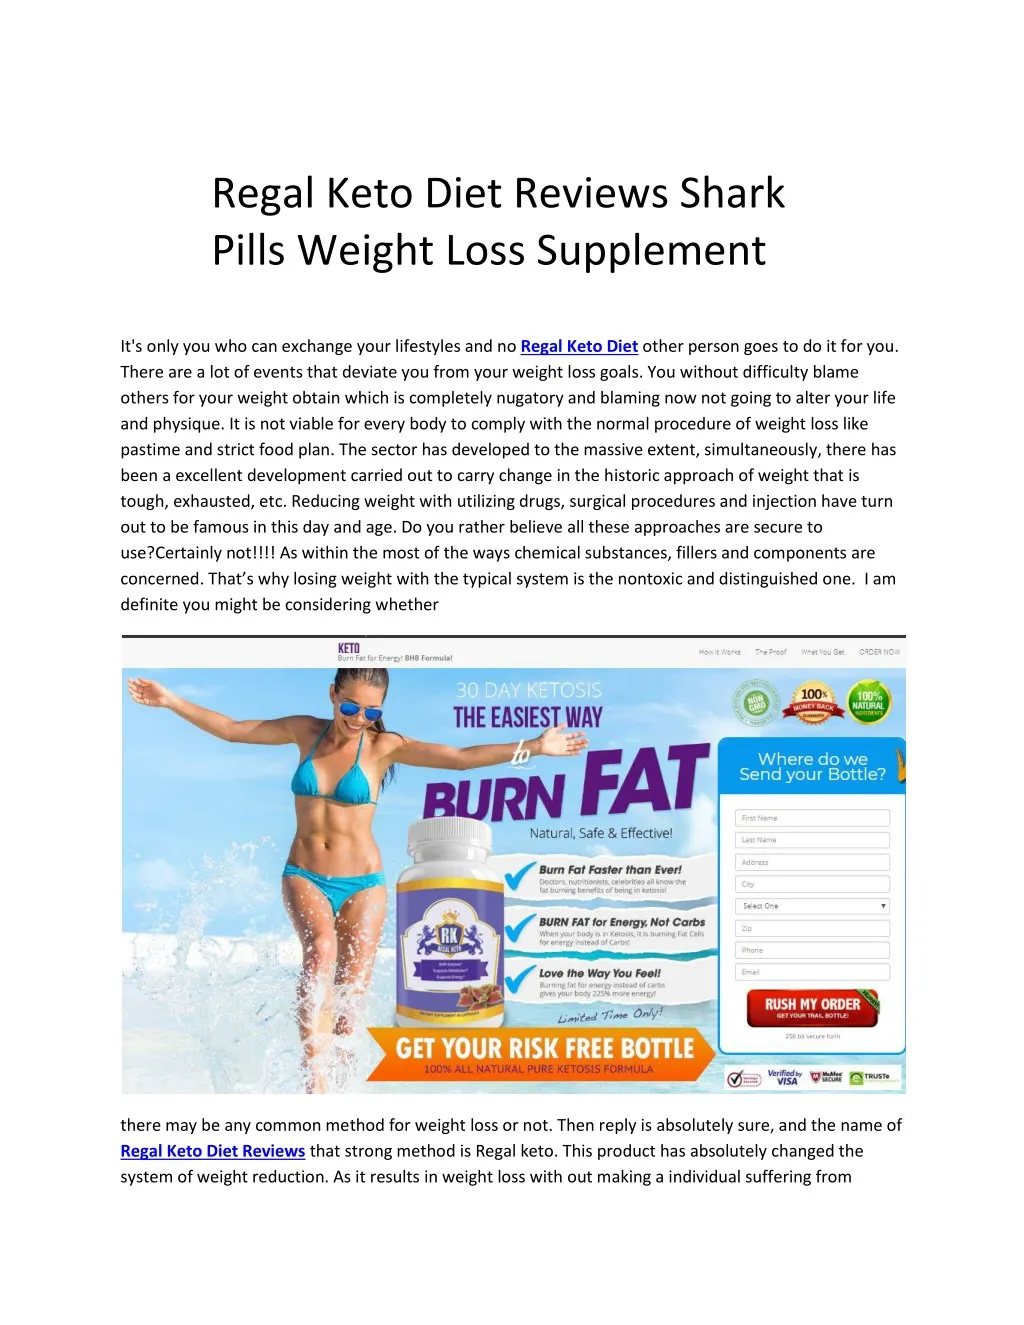 regal keto diet reviews shark pills weight loss